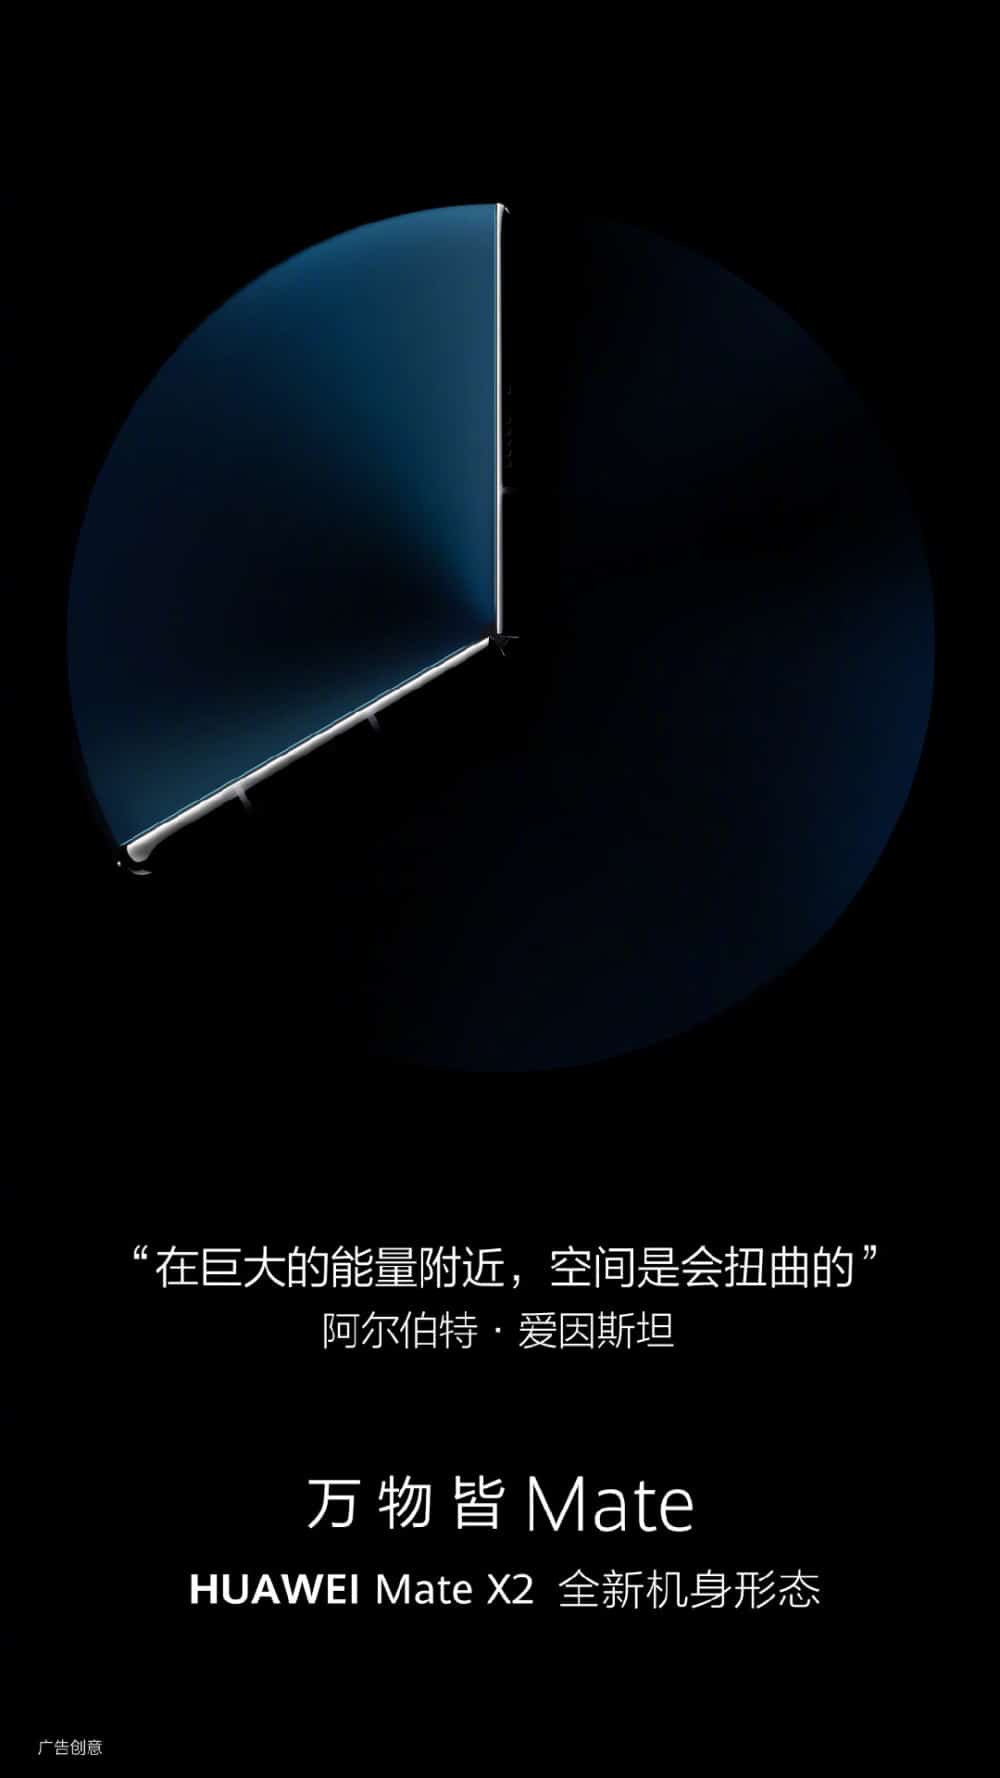 Imagem mostra novo teaser do Mate X2, que revelou mais detalhes sobre o flagship dobrável da marca